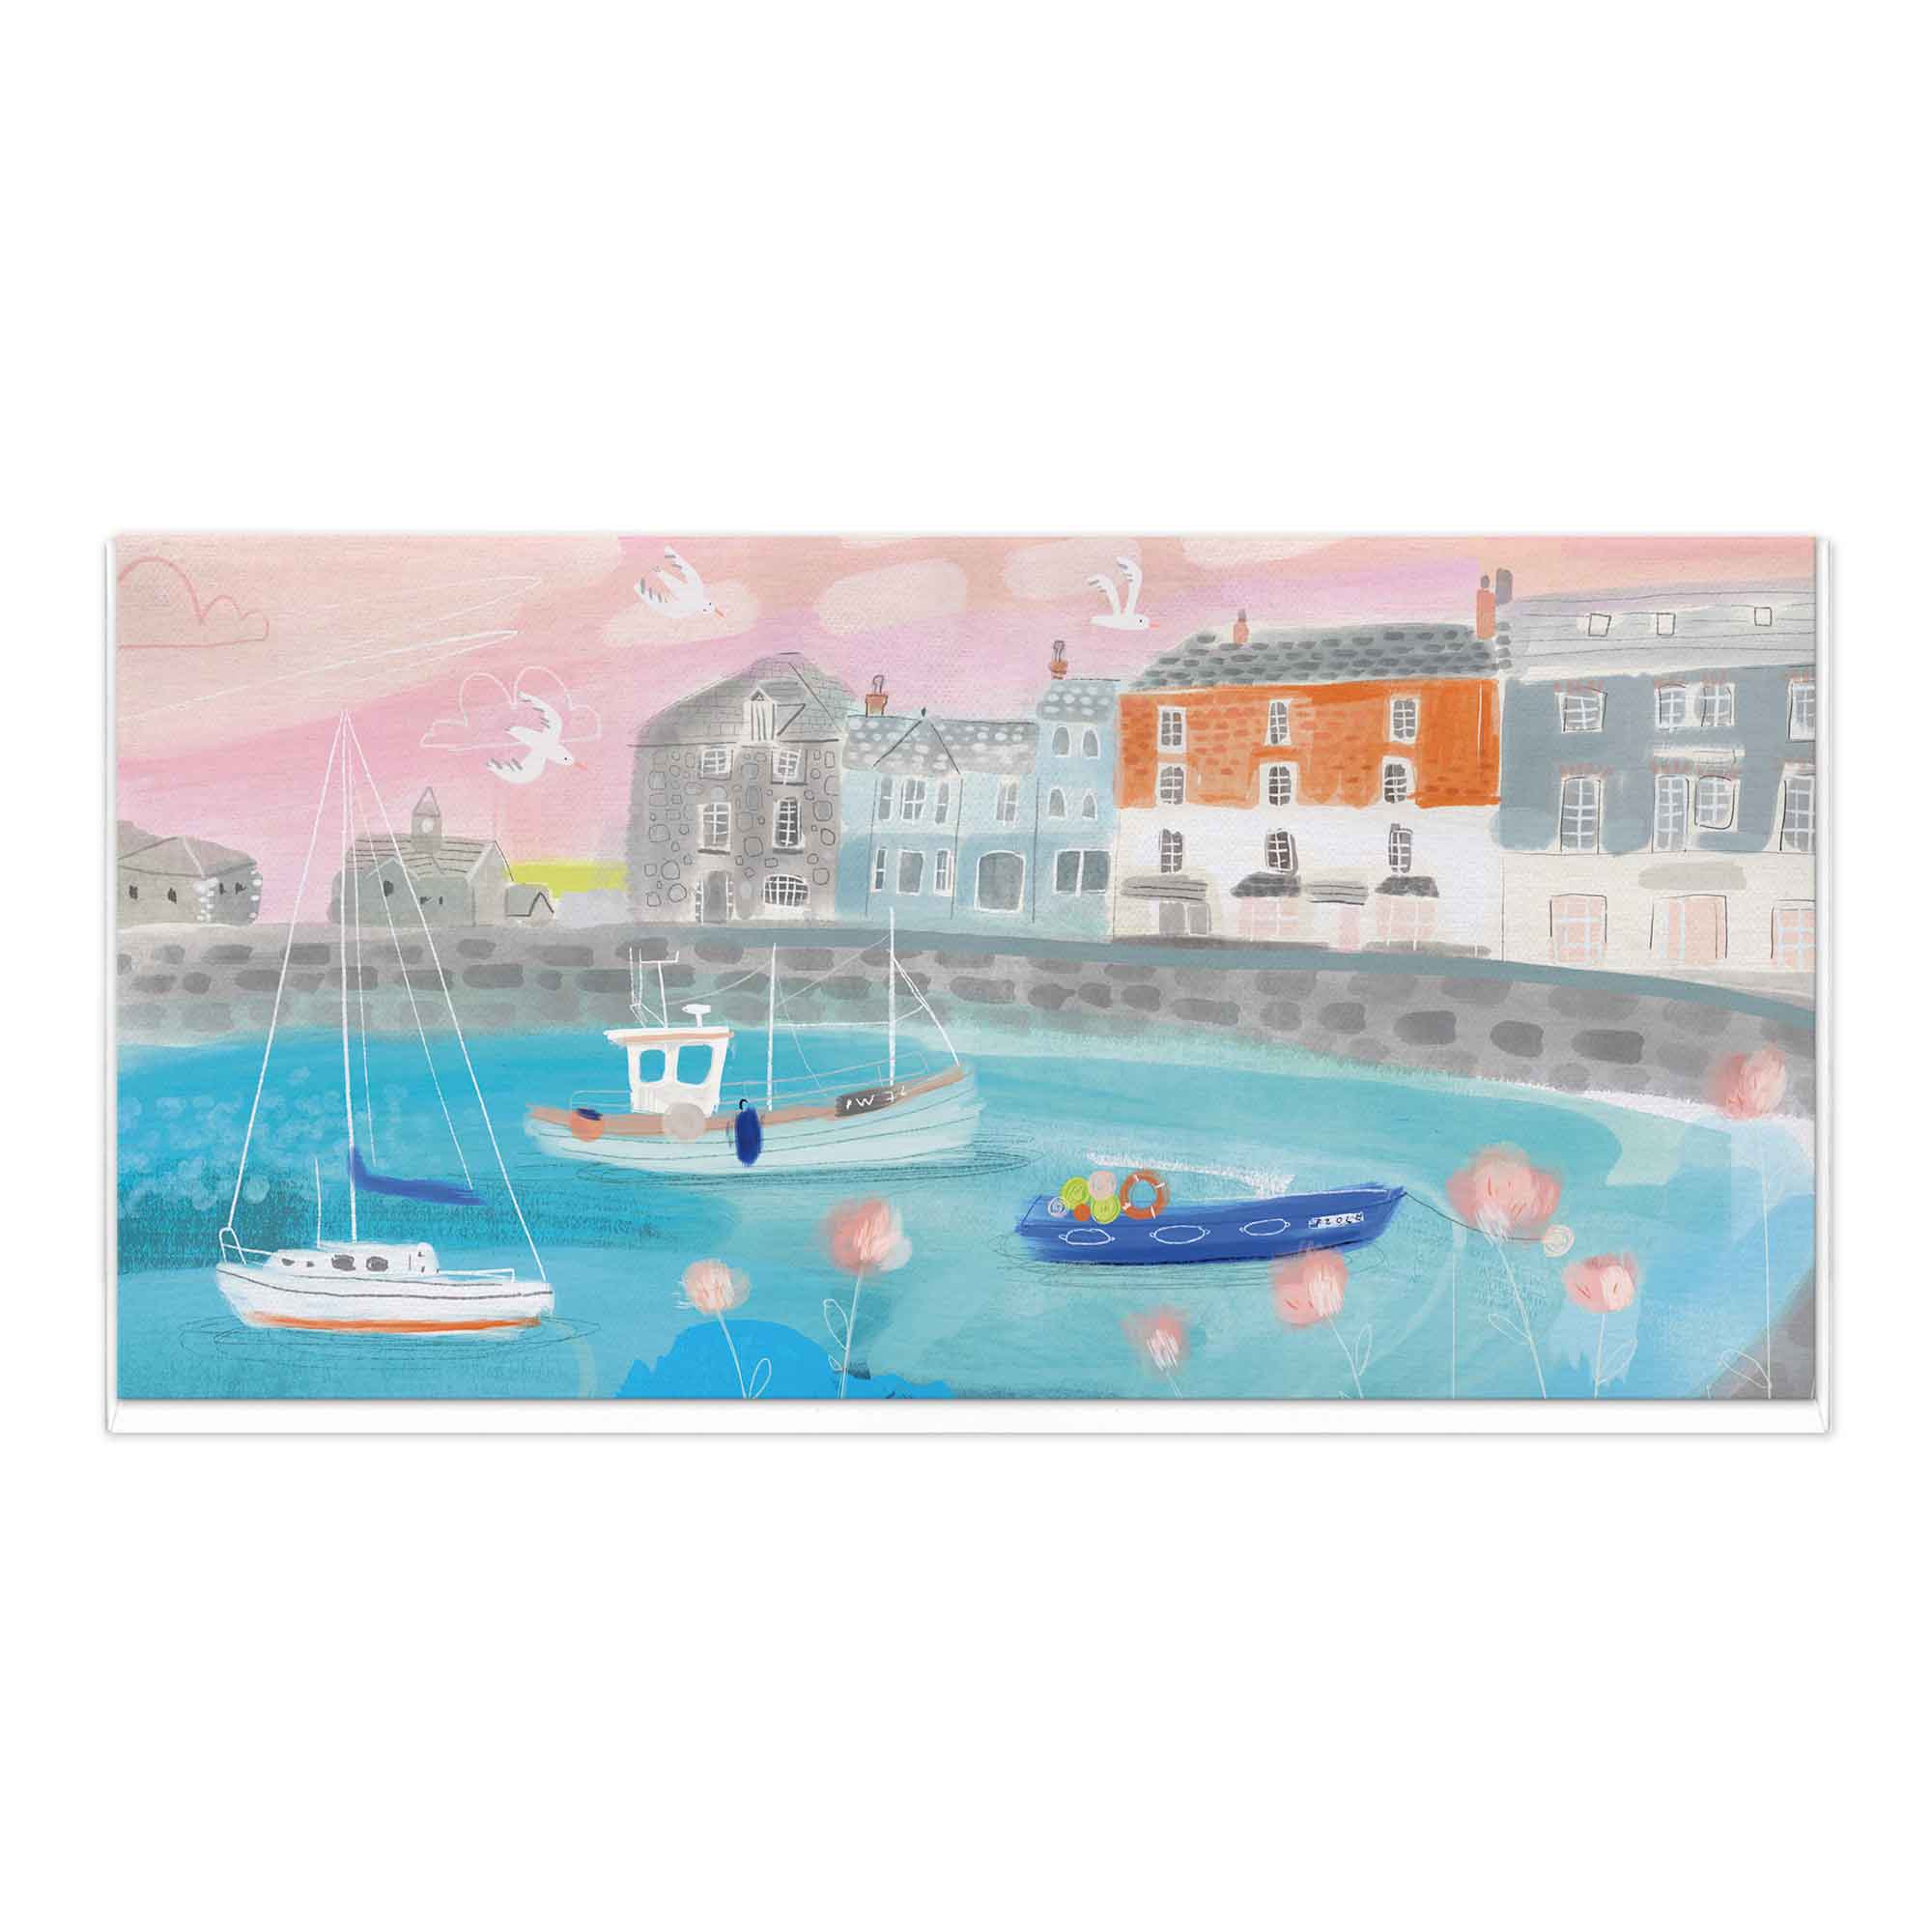 Padstow Harbour Landscape Art Card